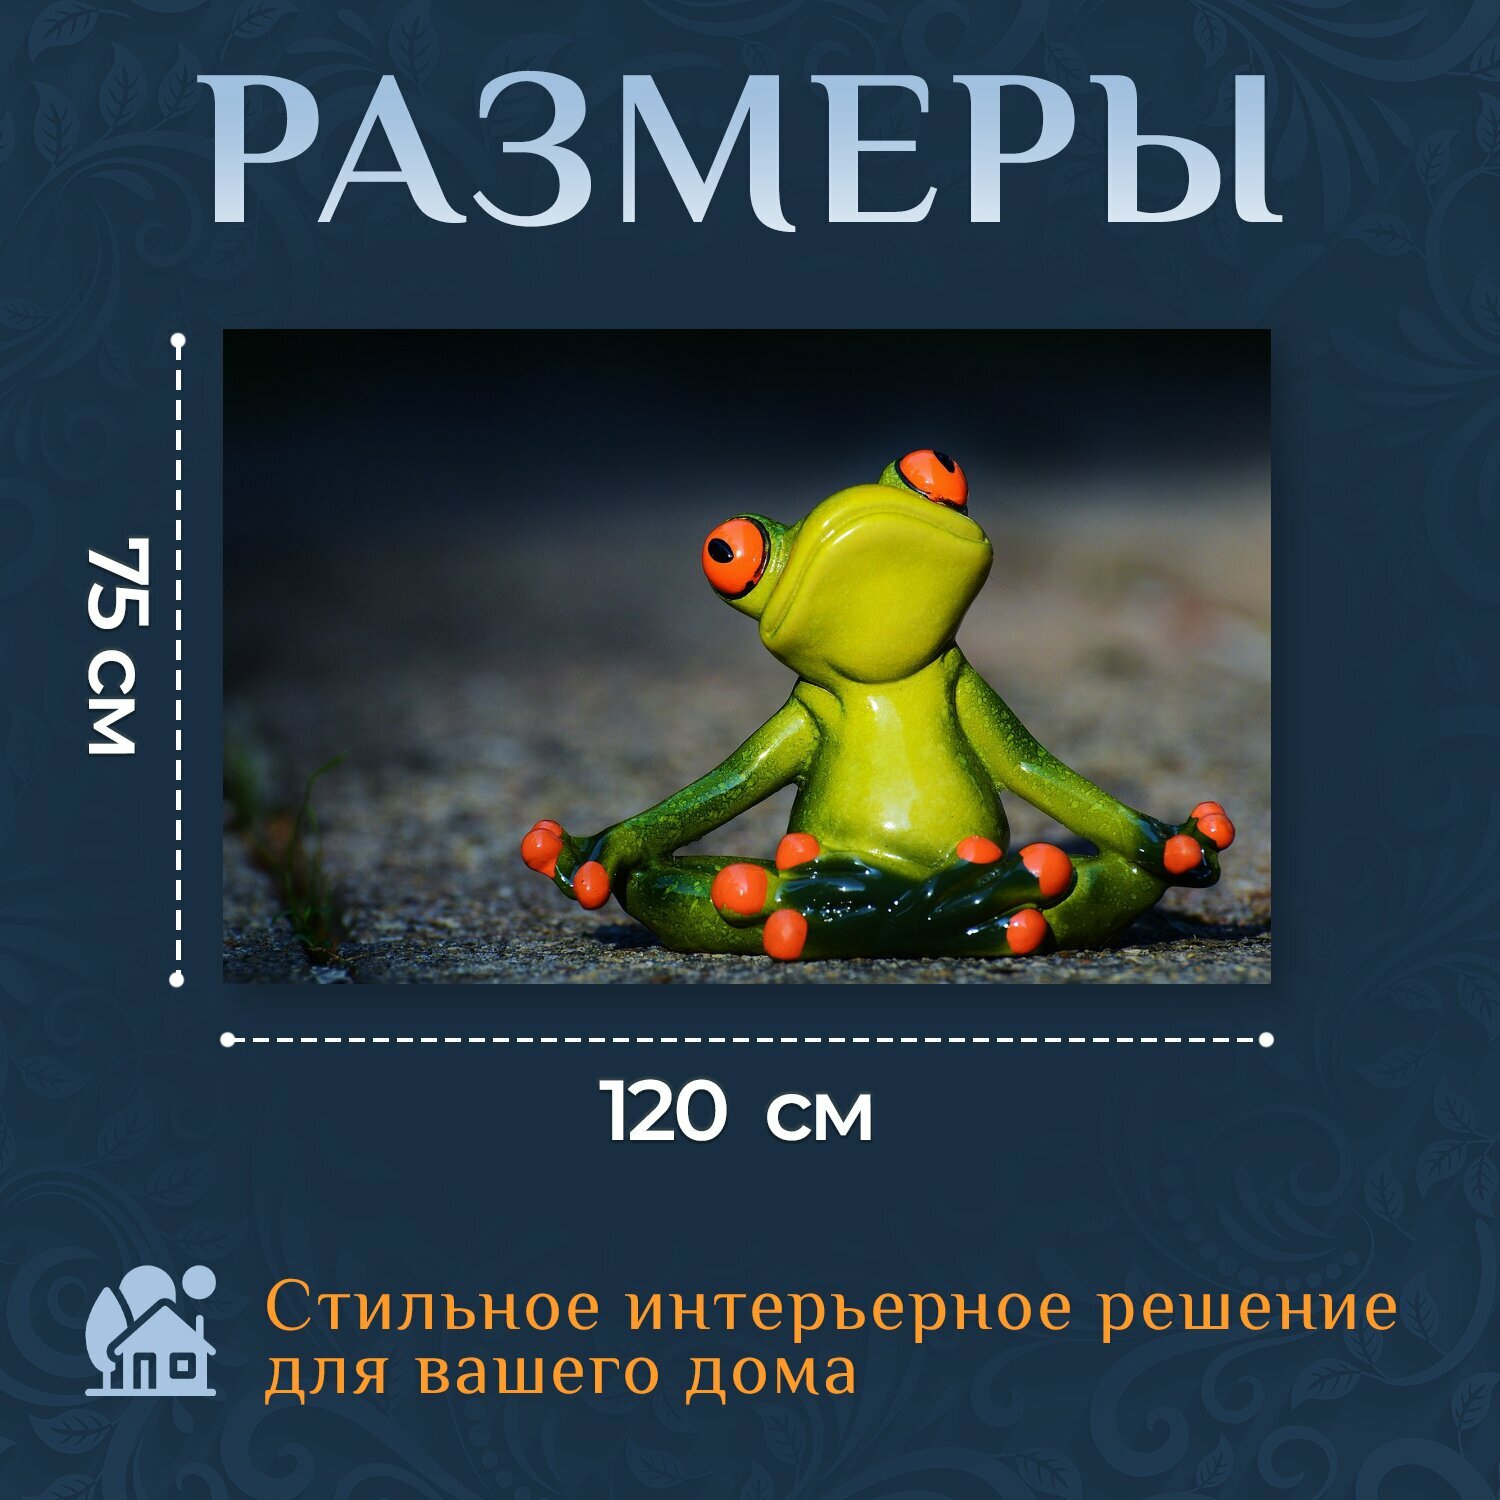 Картина на холсте "Йога, лягушка, расслабленный" на подрамнике 120х75 см. для интерьера